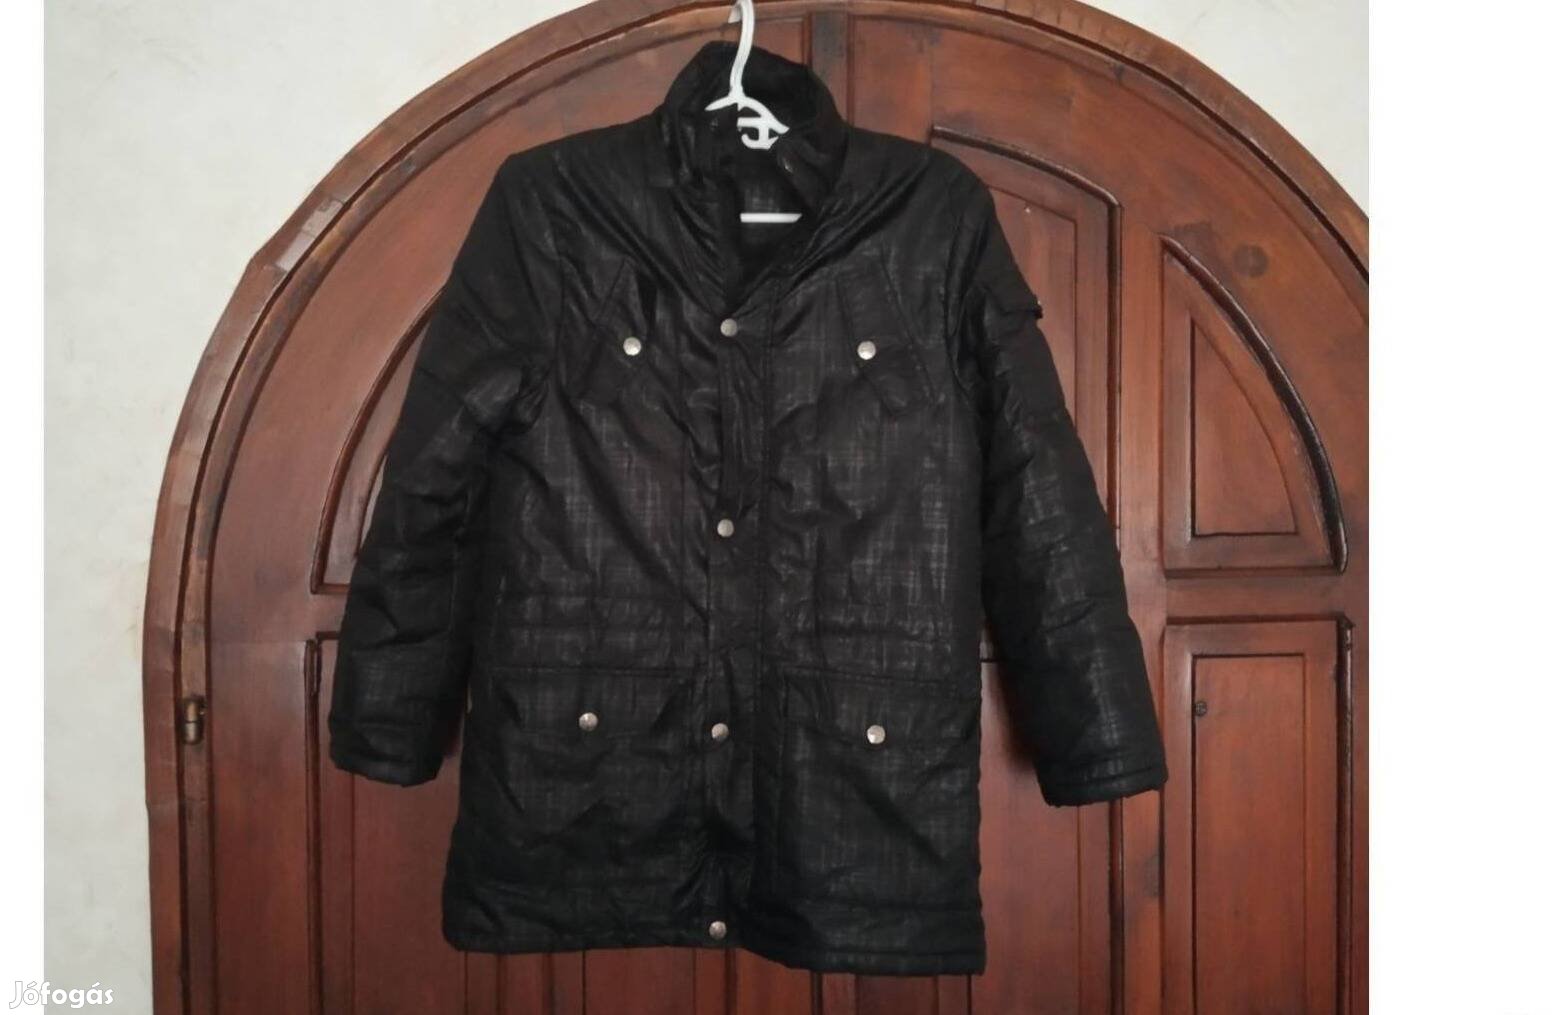 Fekete színű női dzseki "S" méret, Okay 164 márka, tavaszra,őszre